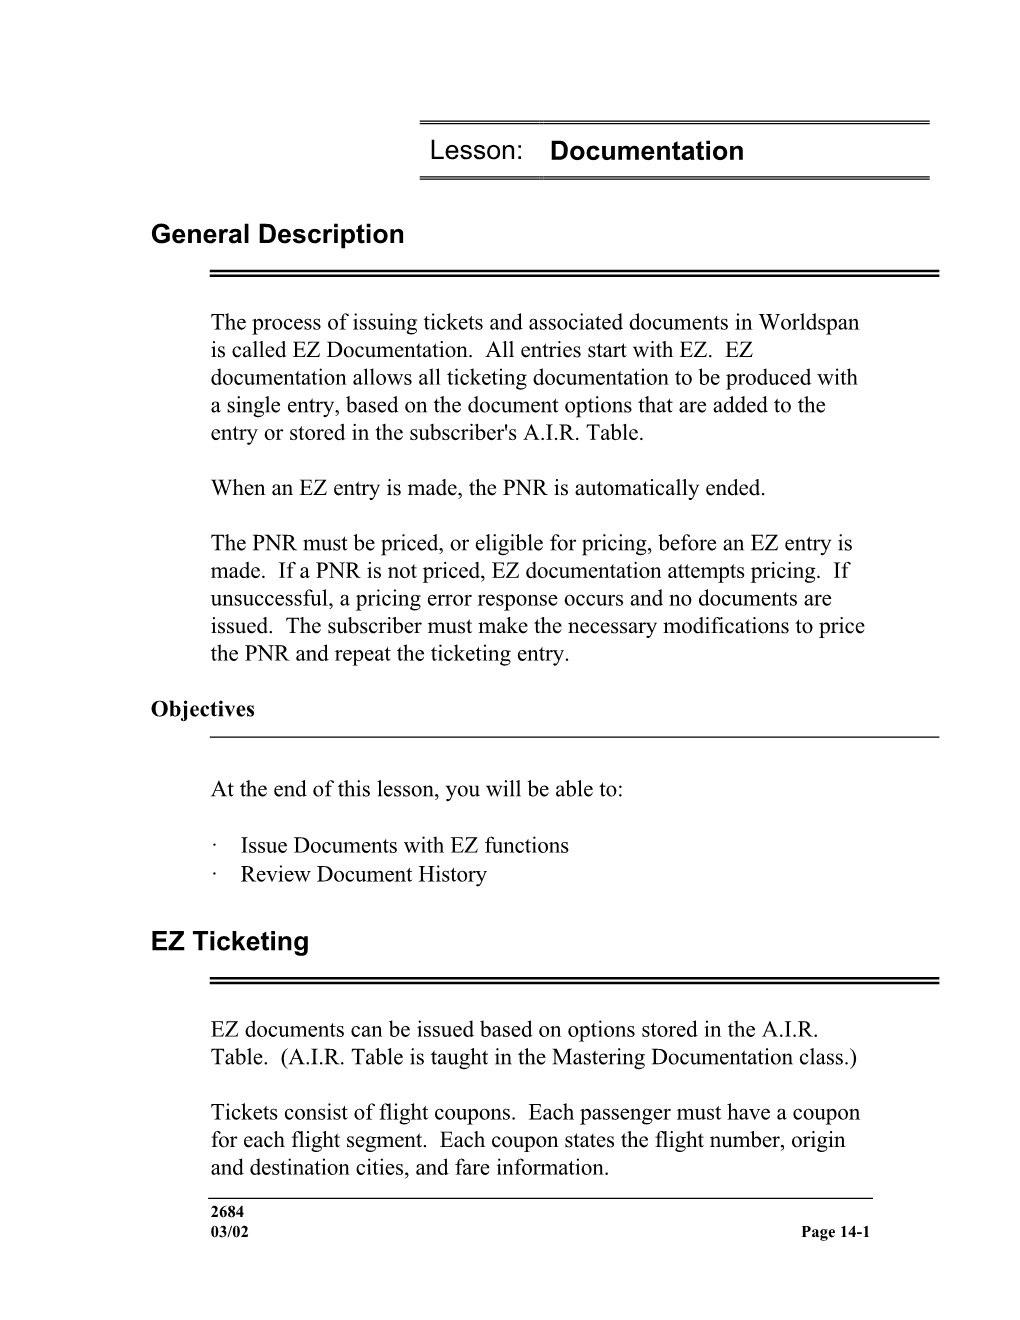 Lesson: Documentation General Description EZ Ticketing